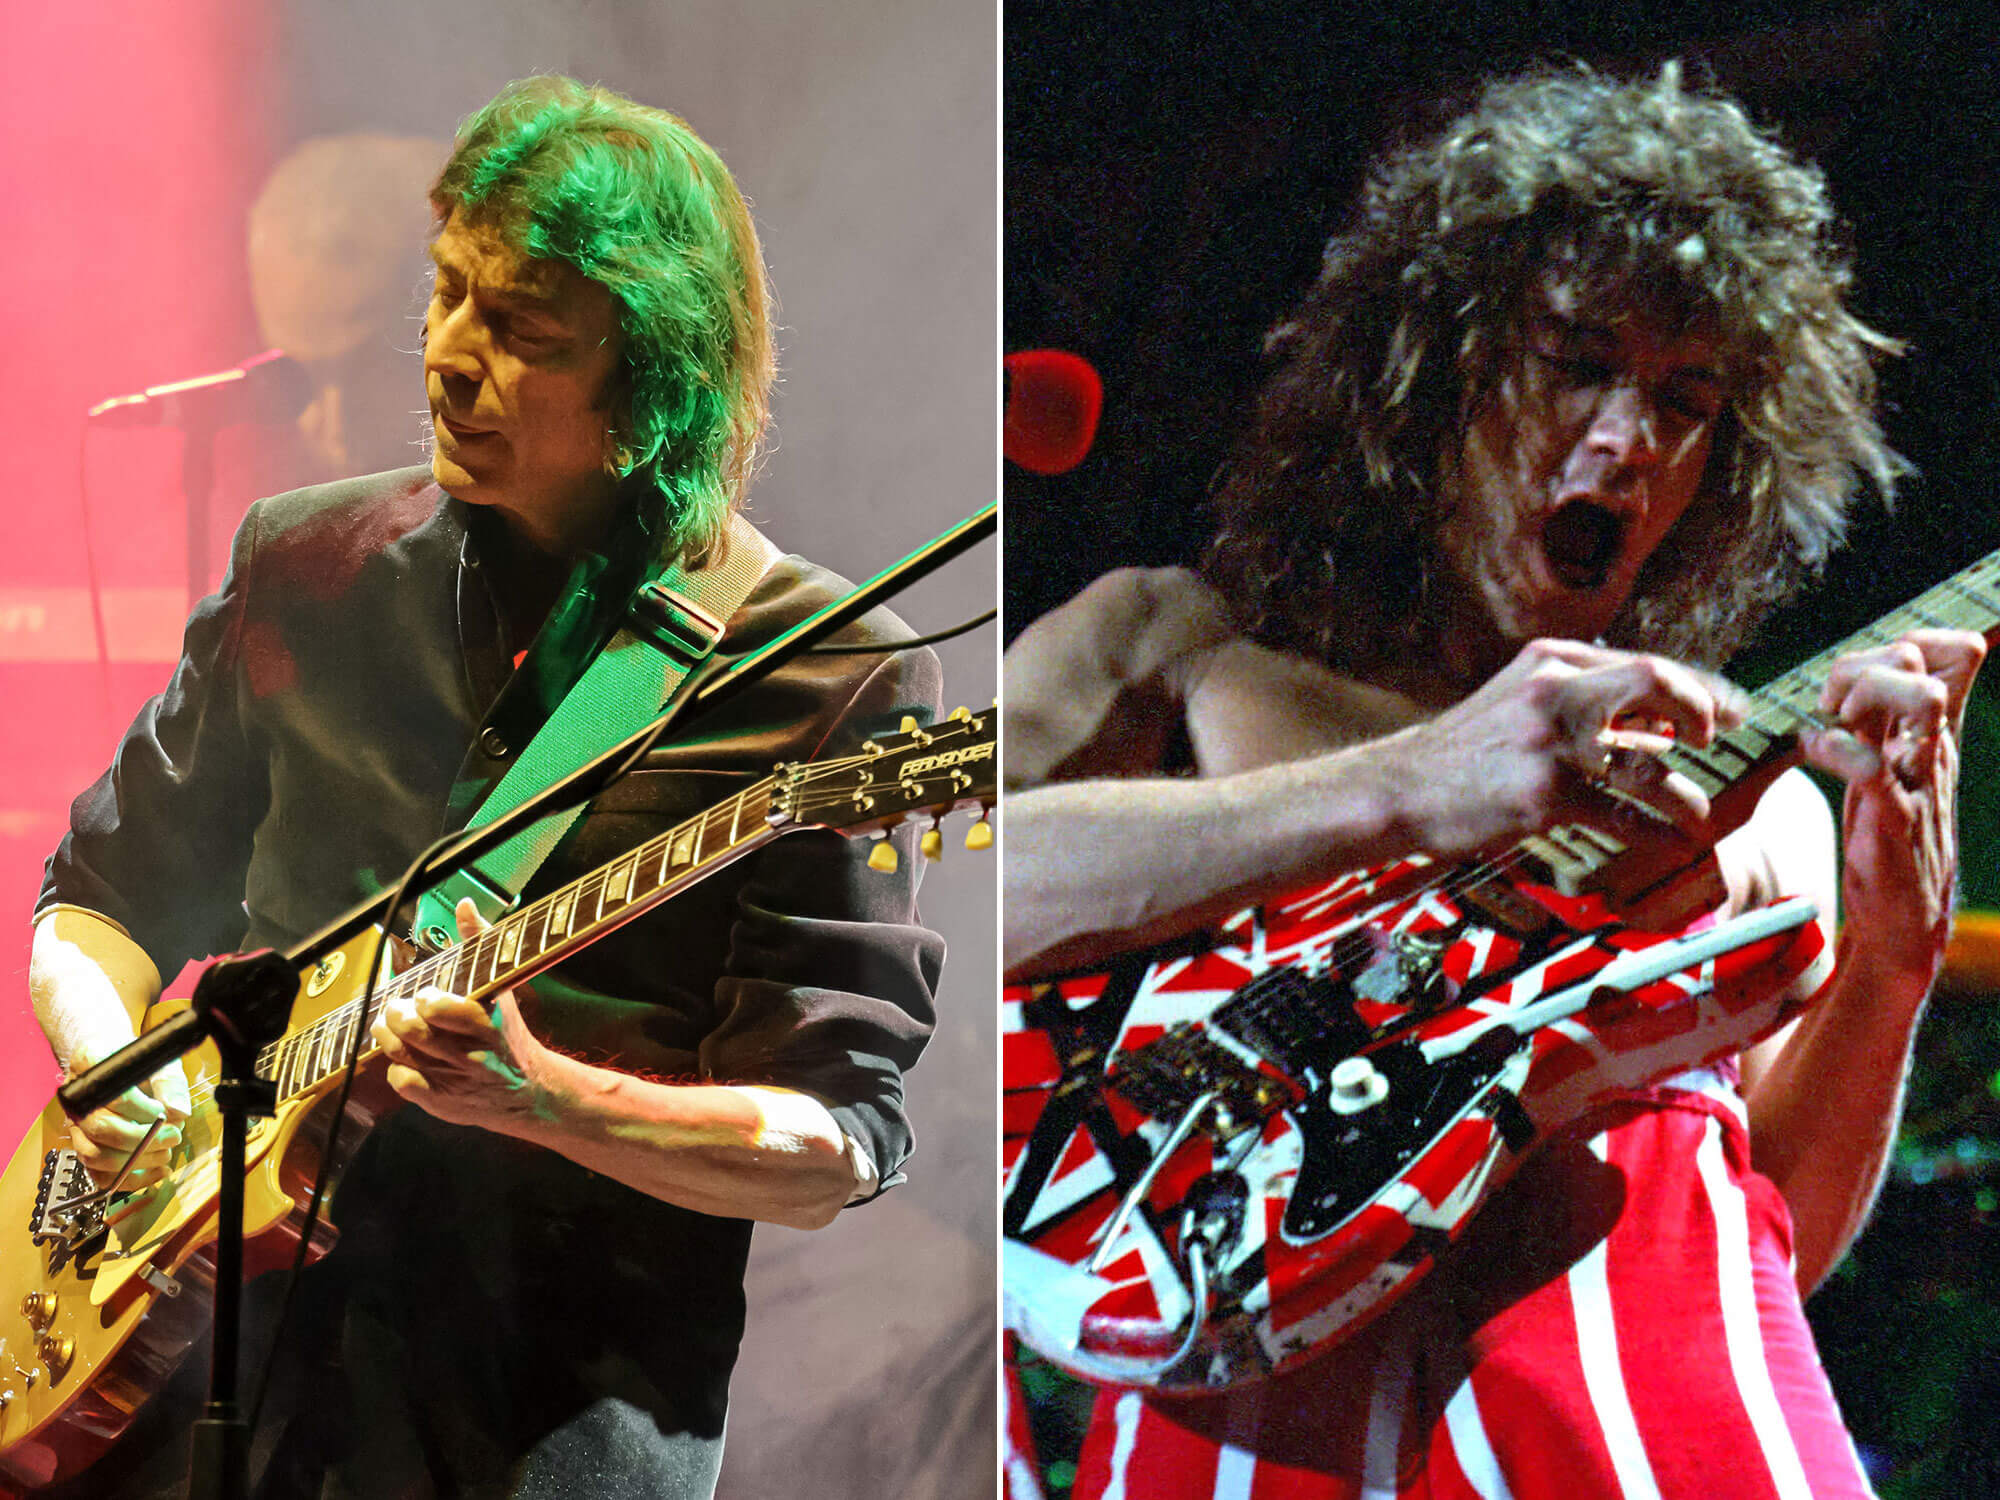 [L-R] Steve Hackett and Eddie Van Halen